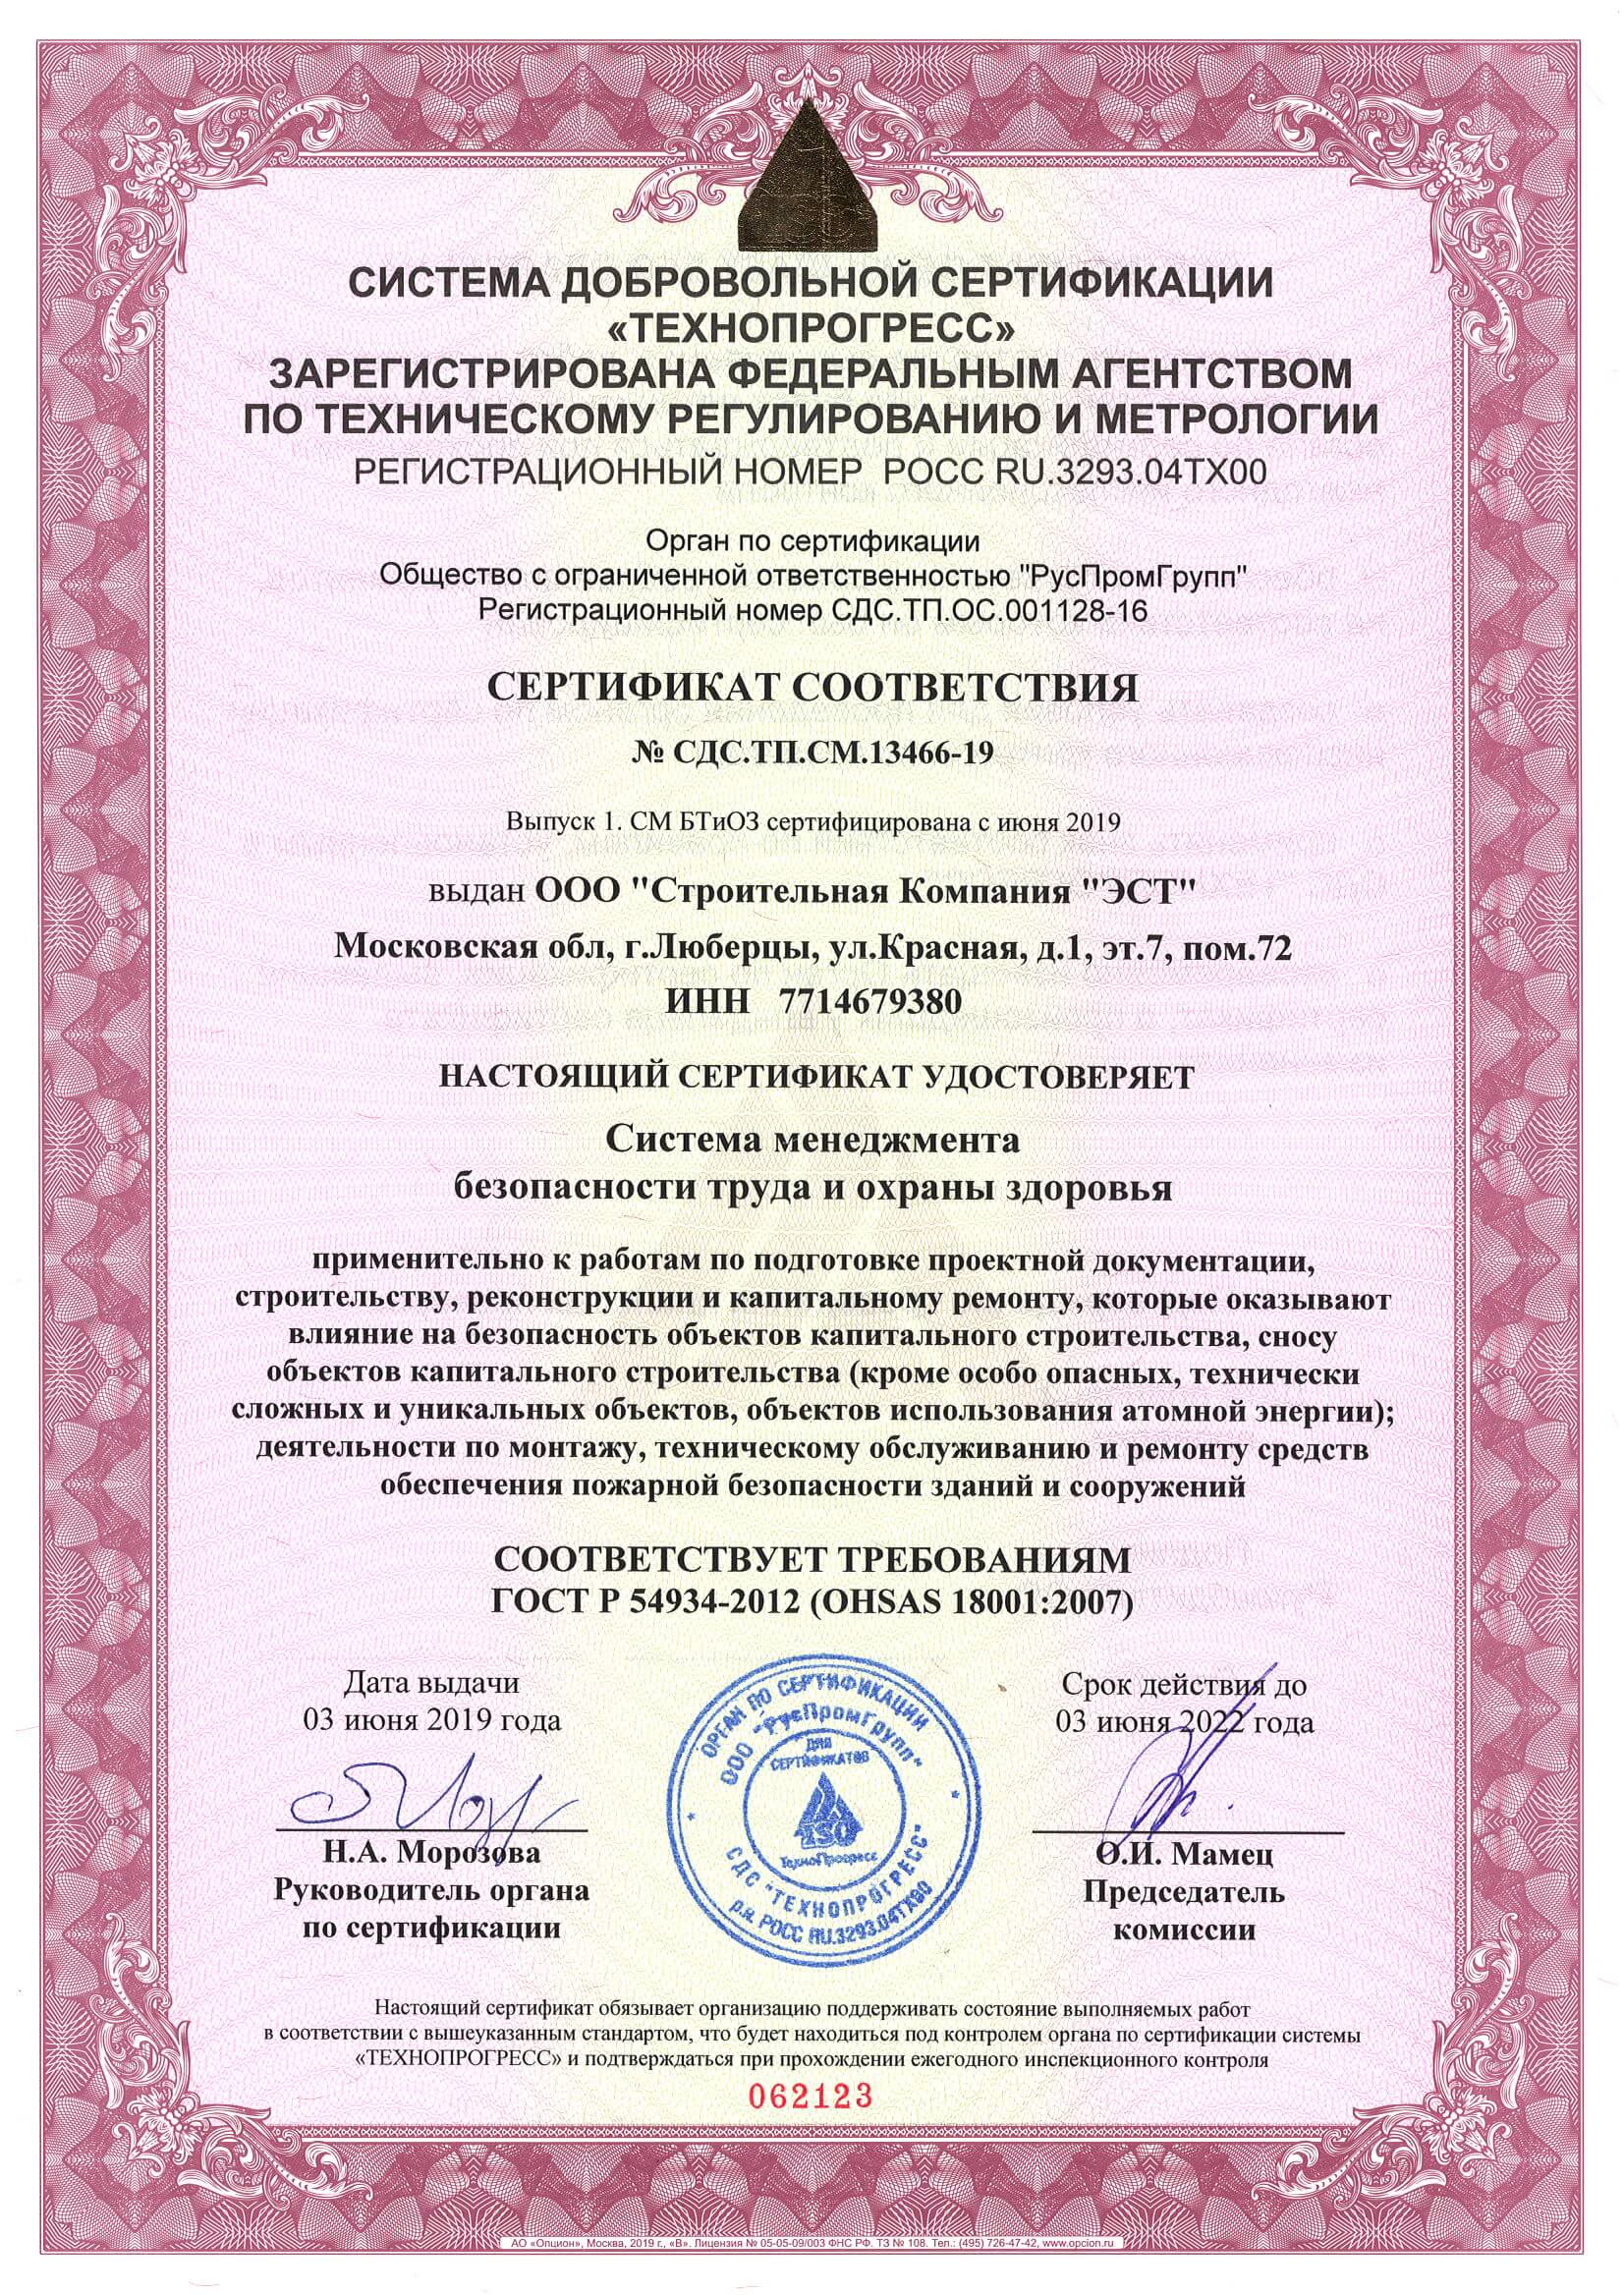 Сертификат соответствия системы менеджмента труда и охраны безопасности (2)_Страница_1